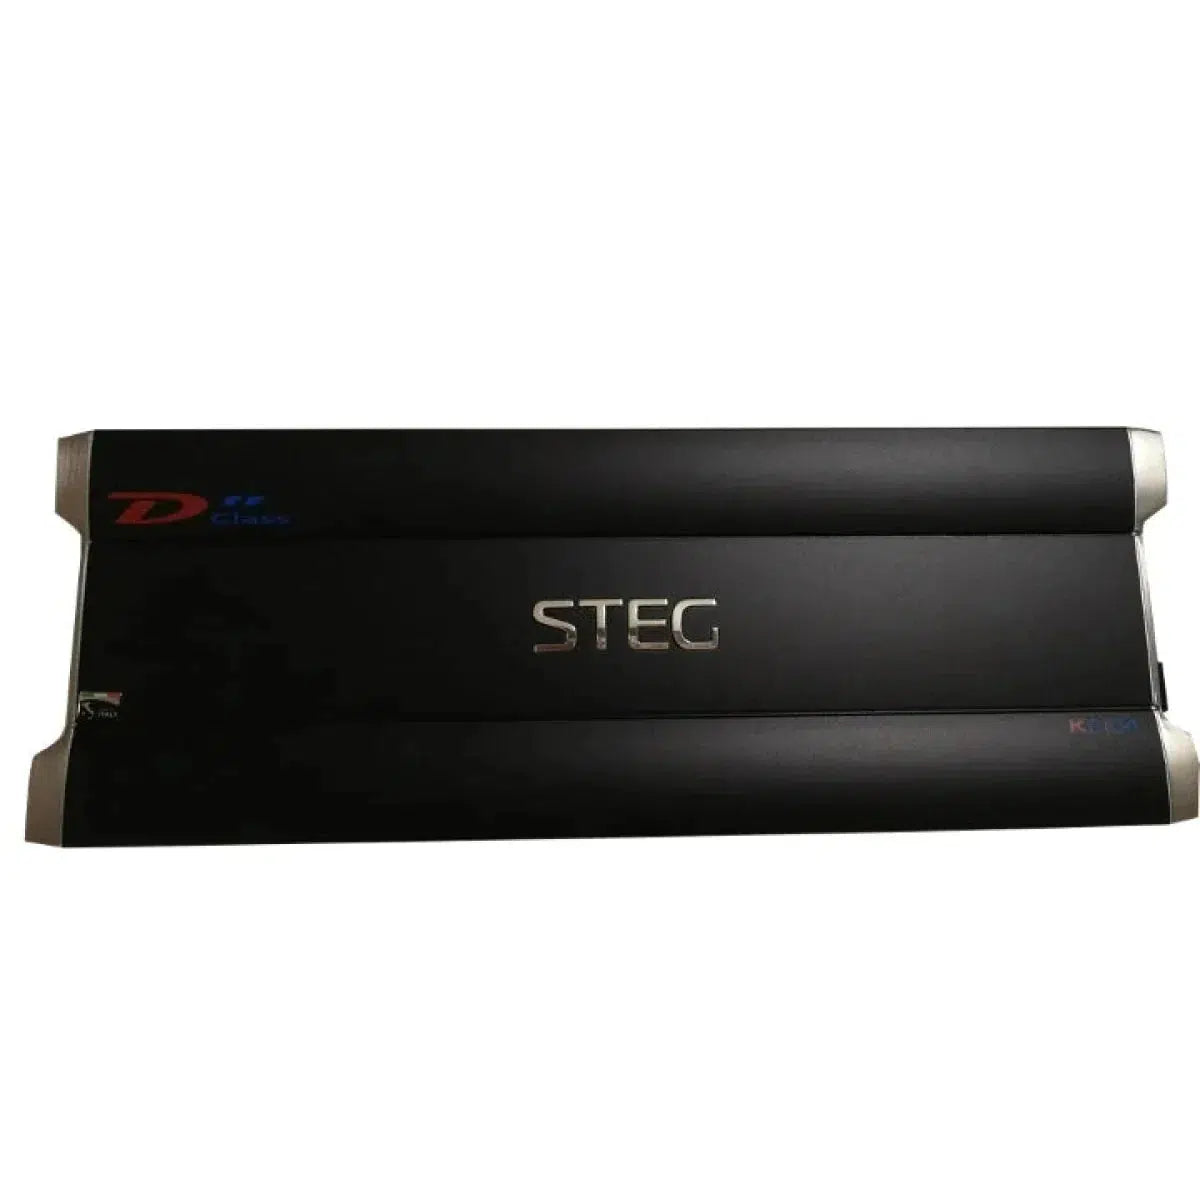 Steg-K2.04D-2-canaux Amplificateur-Masori.fr